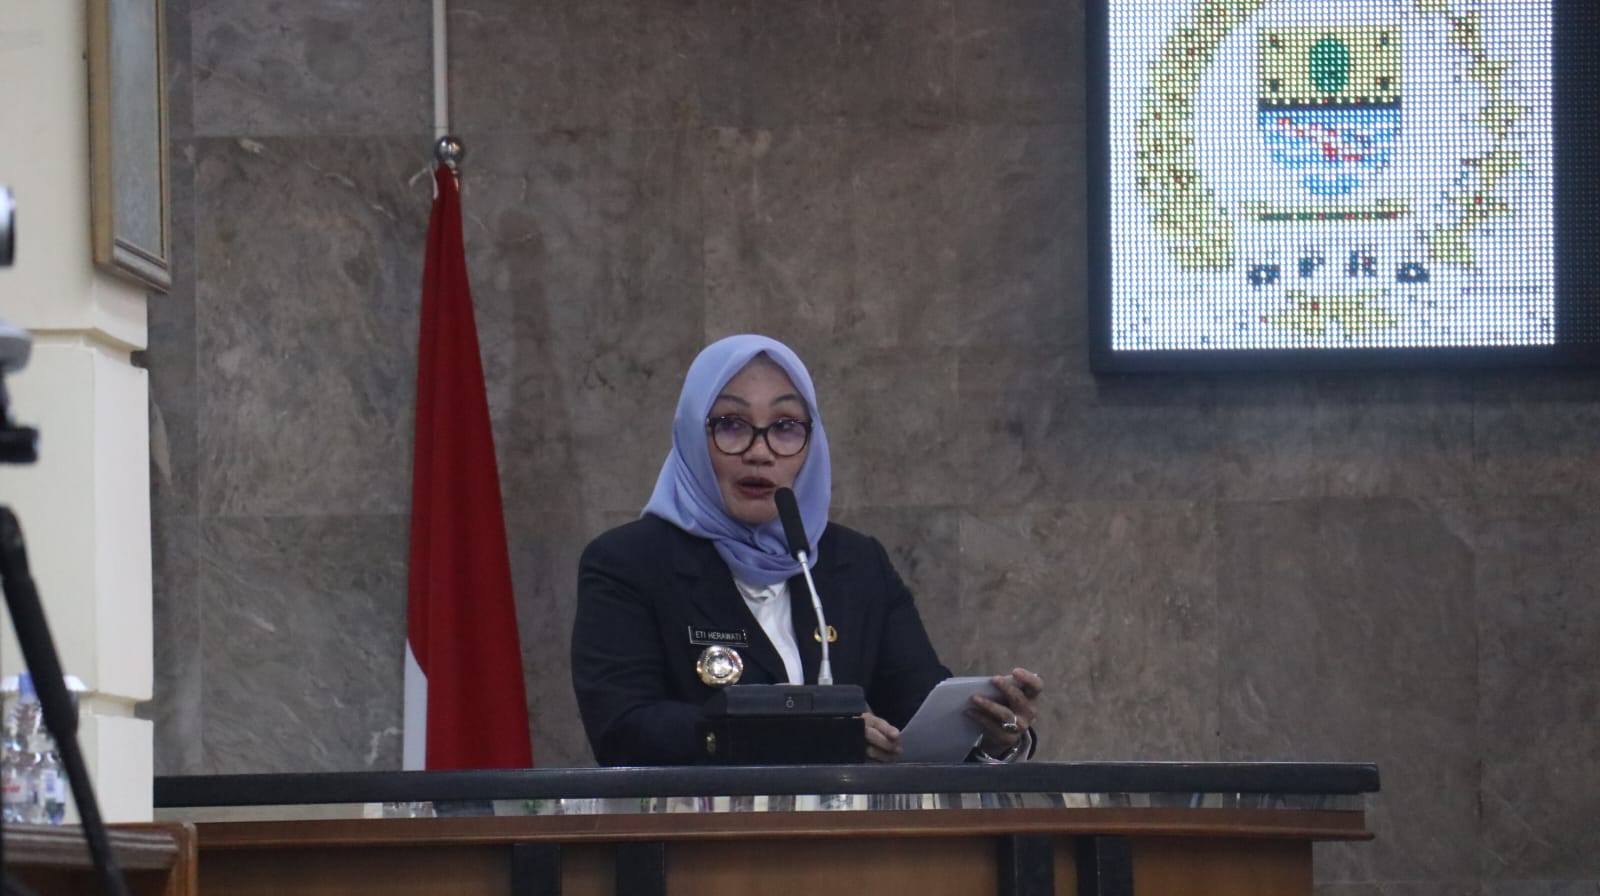 Jelang Akhir Masa Jabatan, Eti Ucapkan Minta Maaf dan Terima Kasih Kepada Seluruh Warga Kota Cirebon